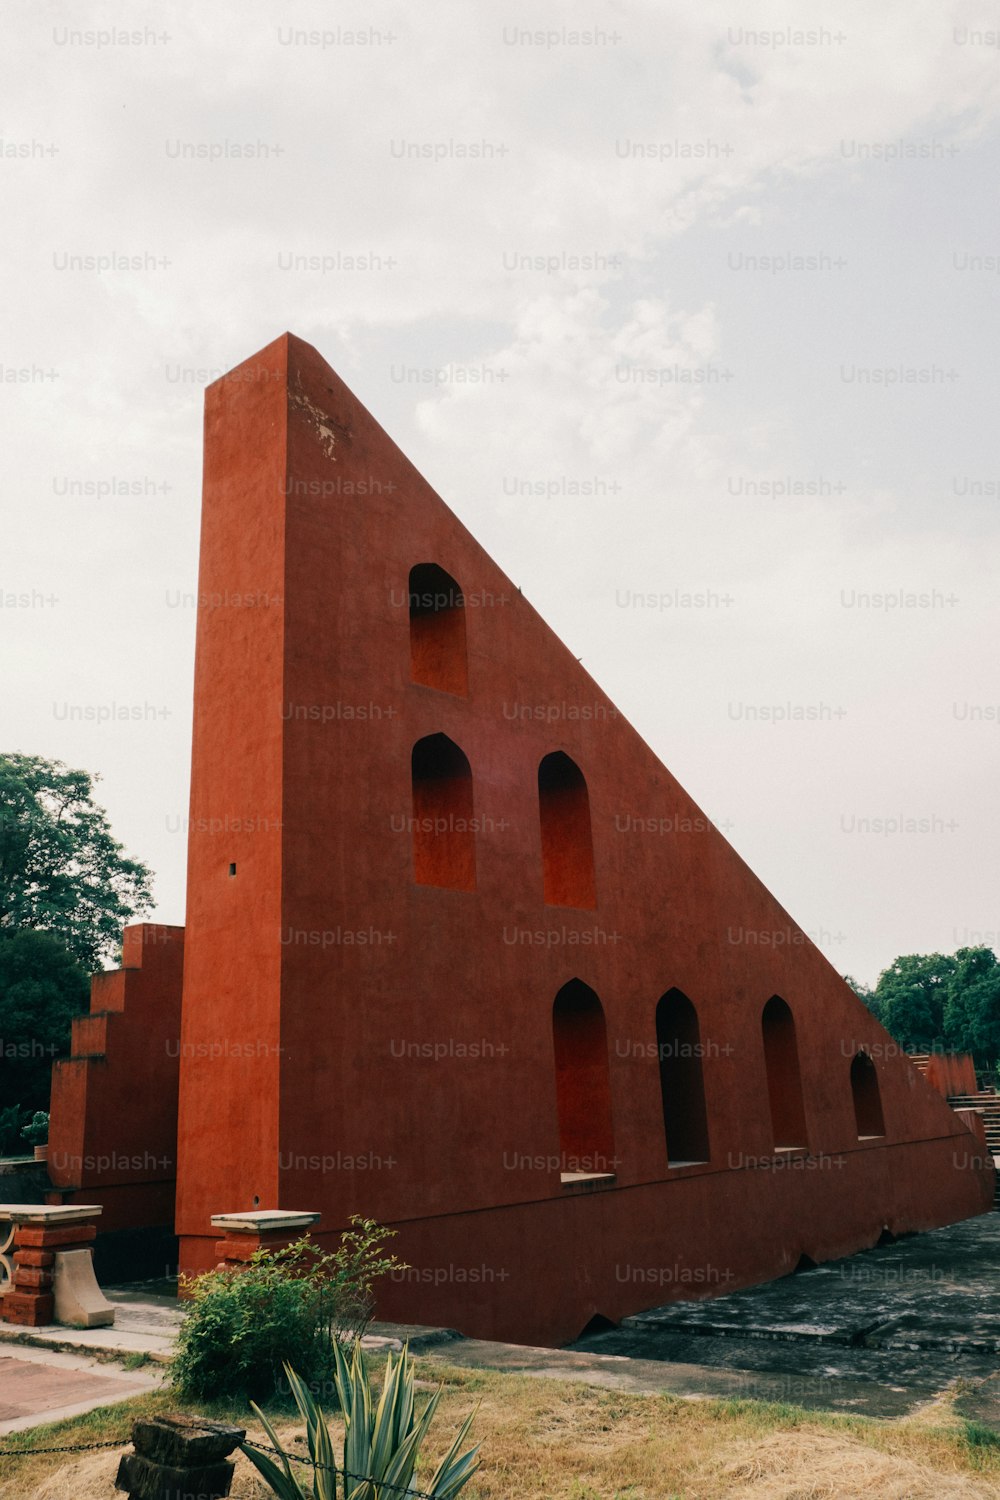 ein großes rotes Gebäude mit einer dreieckigen Form darauf